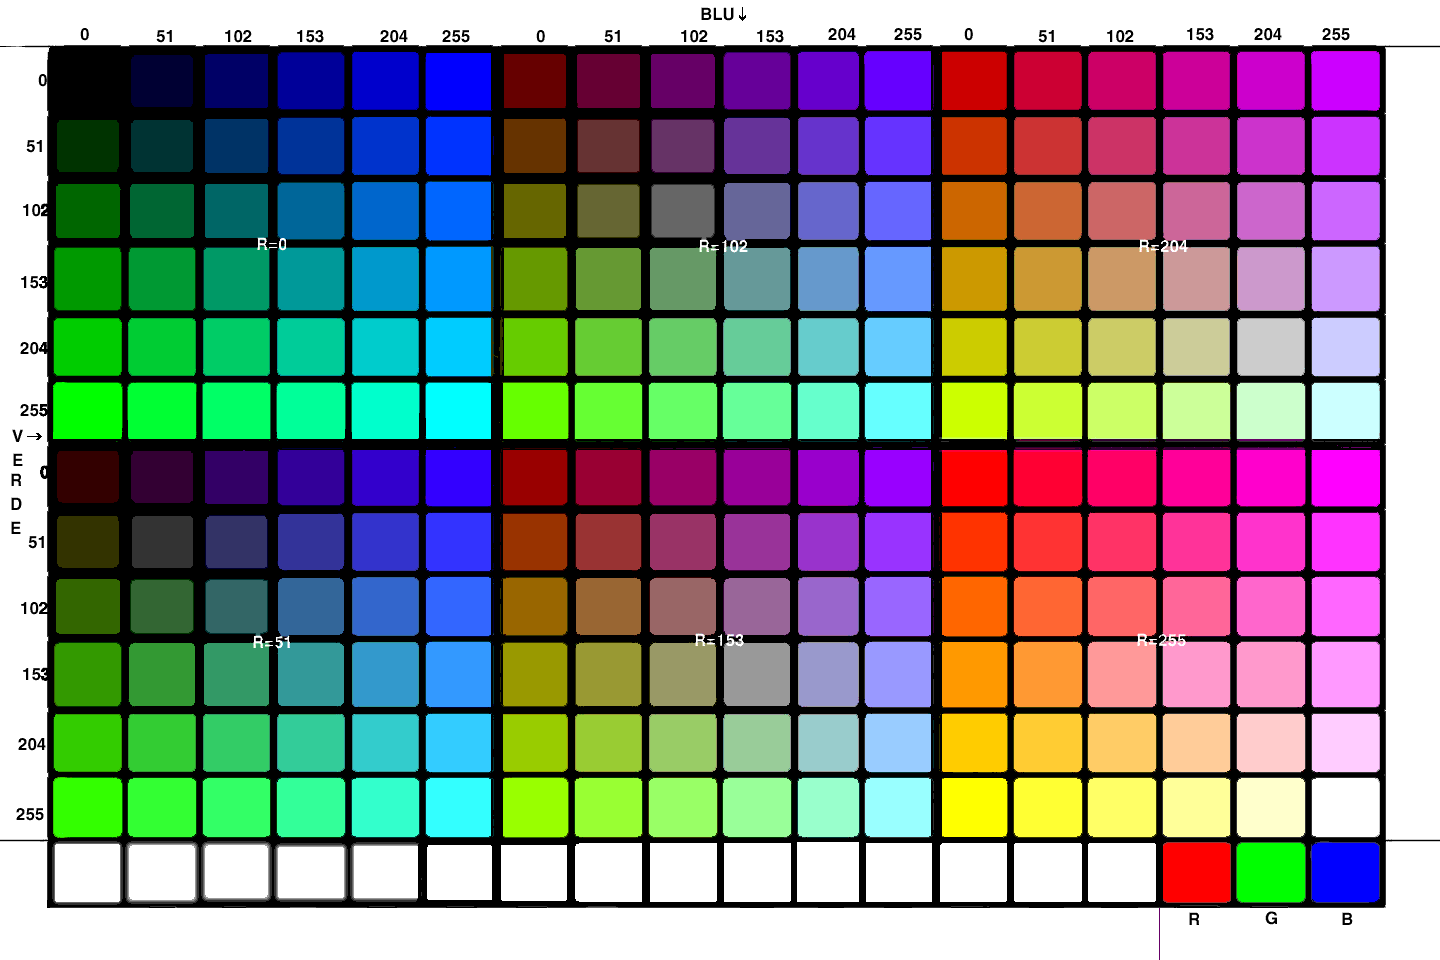 scala colore 8 bit